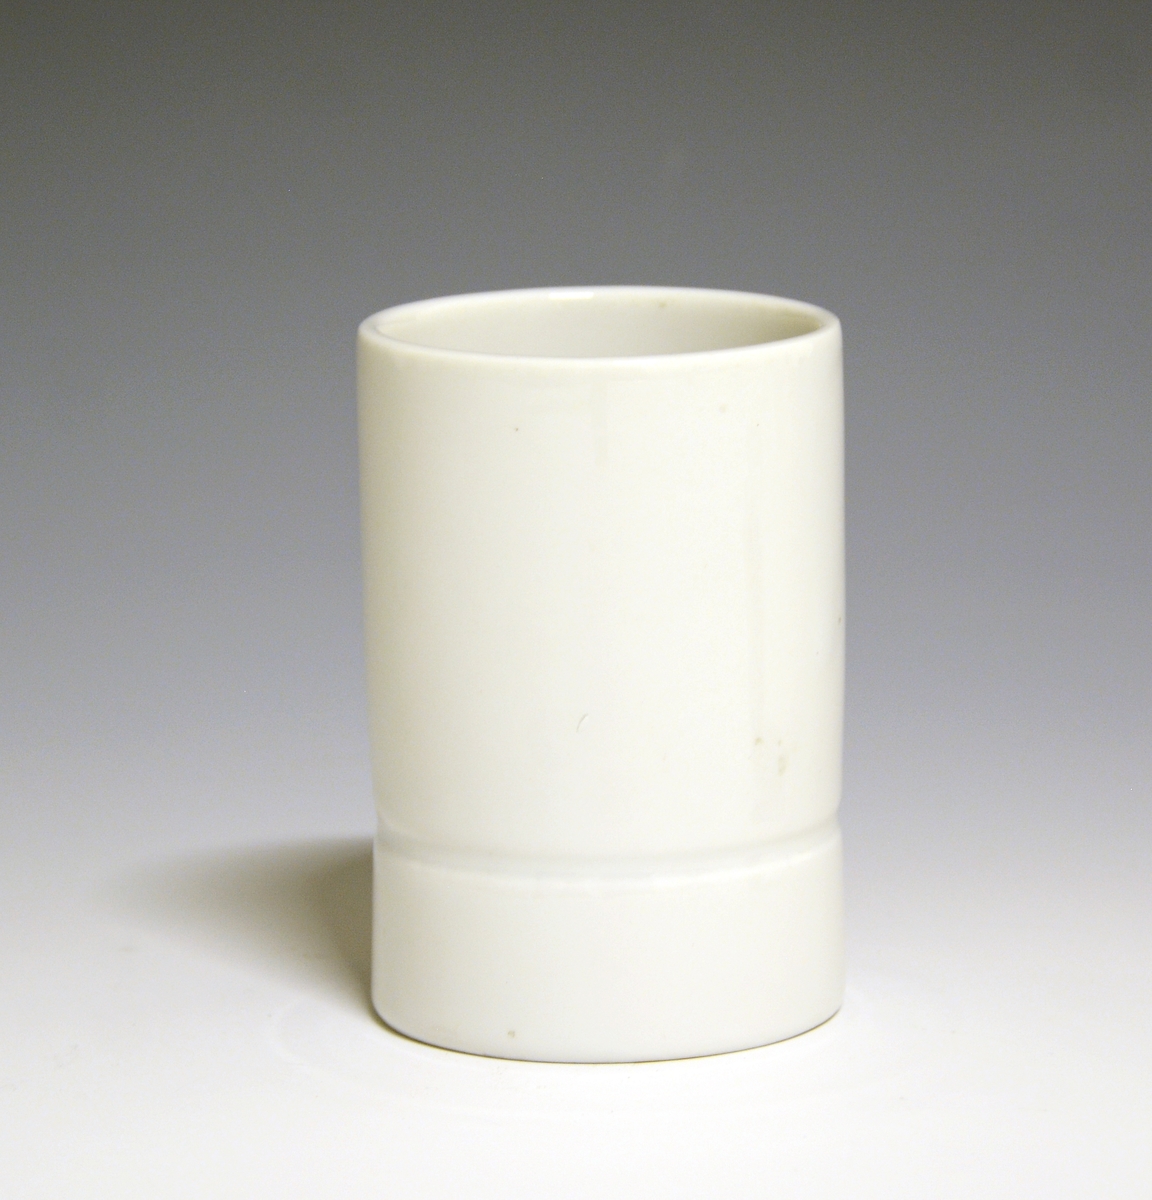 Vase og telysholder av porselen. Fungerer som lysestake den ene veien og vase den andre veien. Sylinderformet med en inntrapping i overgangen mellom vase og telysholder. Hvit glasur. . Ustemplet.
Design: Grete Rønning.